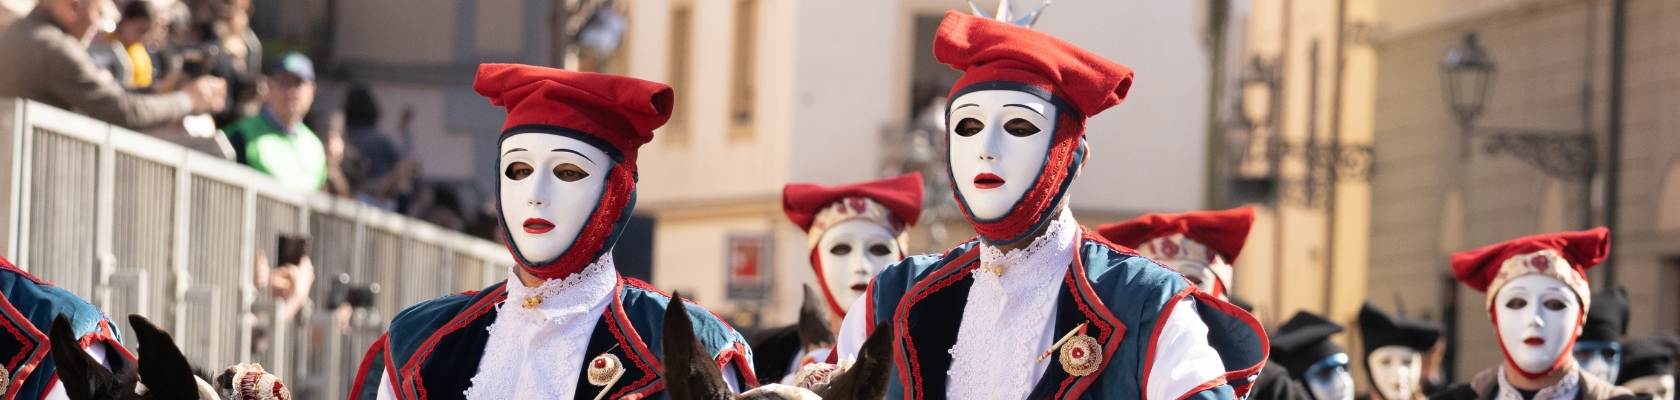 Tradition carnavalesque de Sardaigne, avec les masques Issohadores et les Mamuthones,  Moby-Lines-carnaval-sardaigne-masque-Issohadores